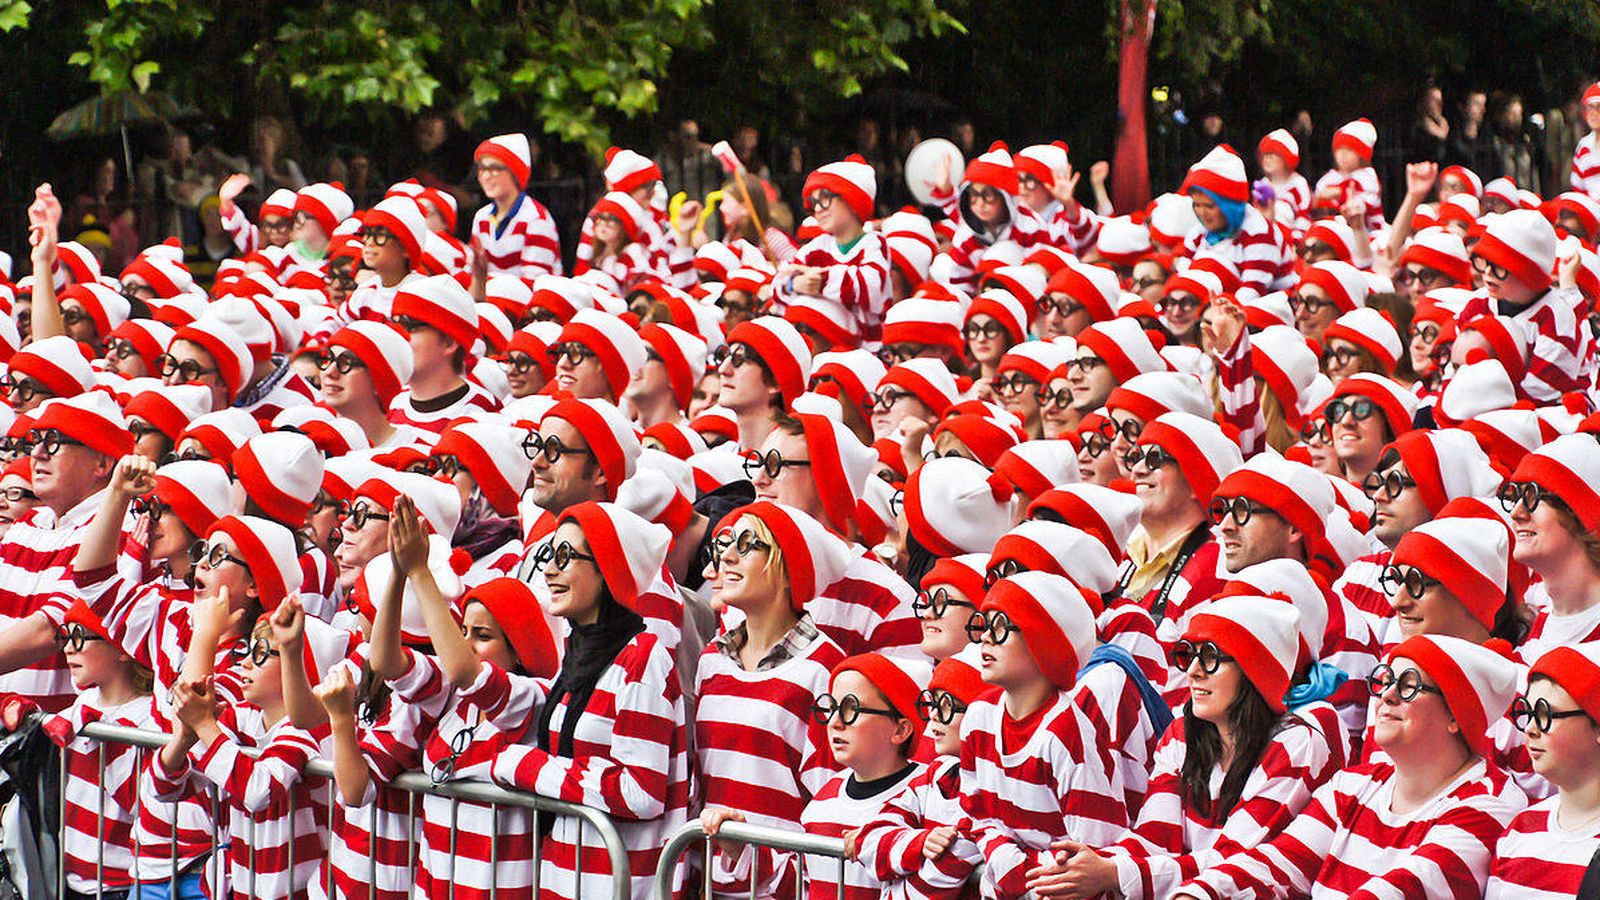 Foto: Miles de personas disfrazadas de Wally consiguieron un récord en Dublín, Irlanda, en 2011 (CC/Animalparty)